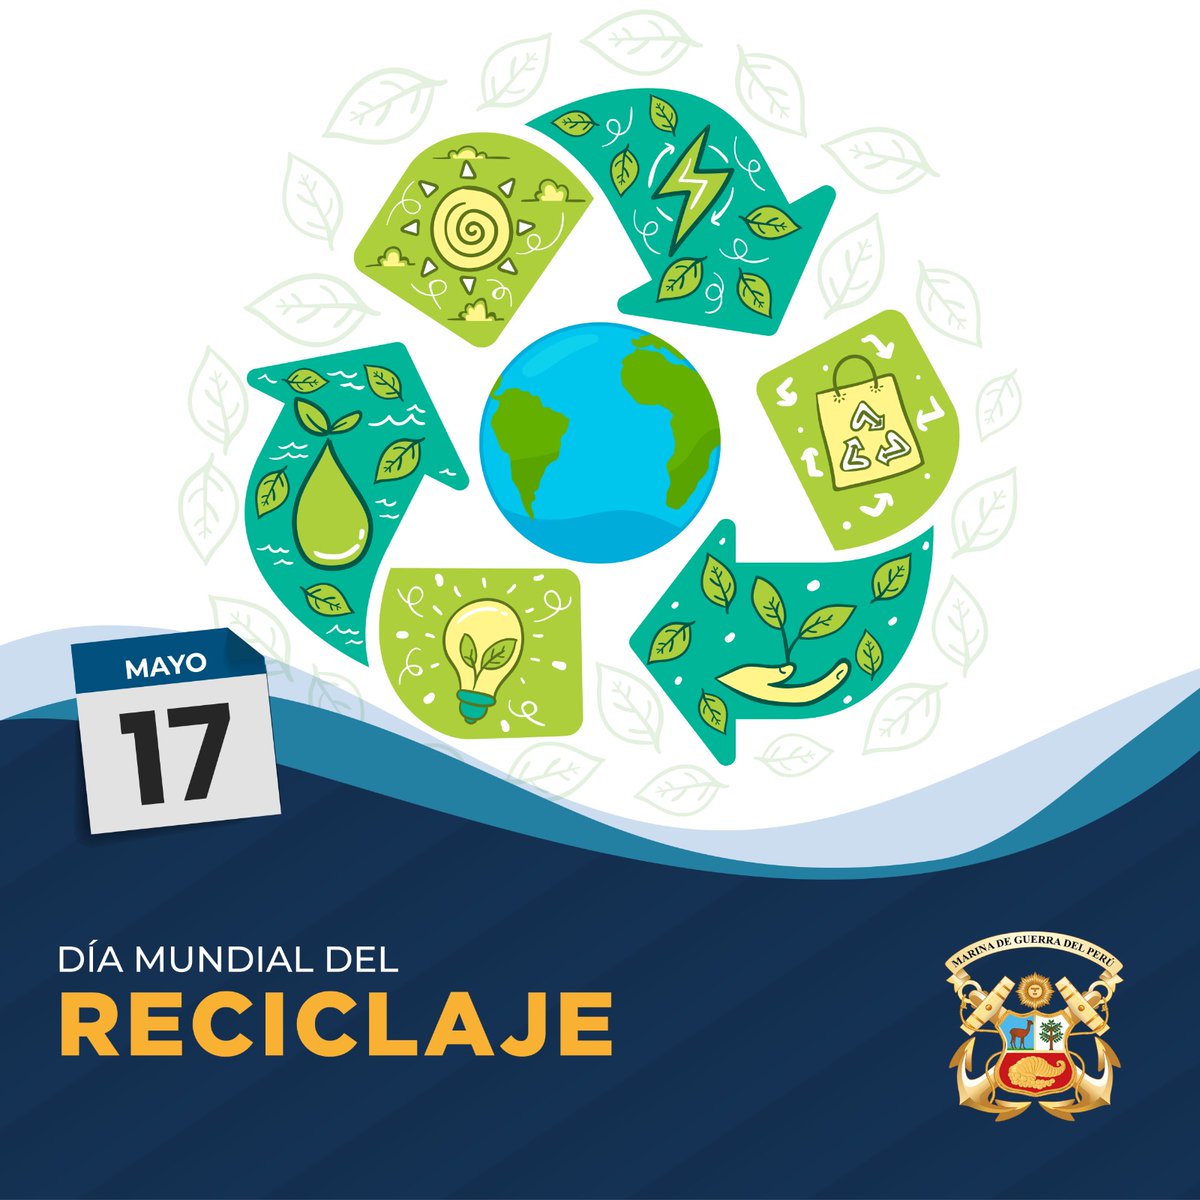 #MGPterecuerda Hoy en el #DíaMundialdelReciclaje♻️ tomemos conciencia de la importancia de reducir, reutilizar🔃 y reciclar los desechos, para proteger nuestros recursos naturales, reducir la contaminación y disminuir el impacto del cambio climático.